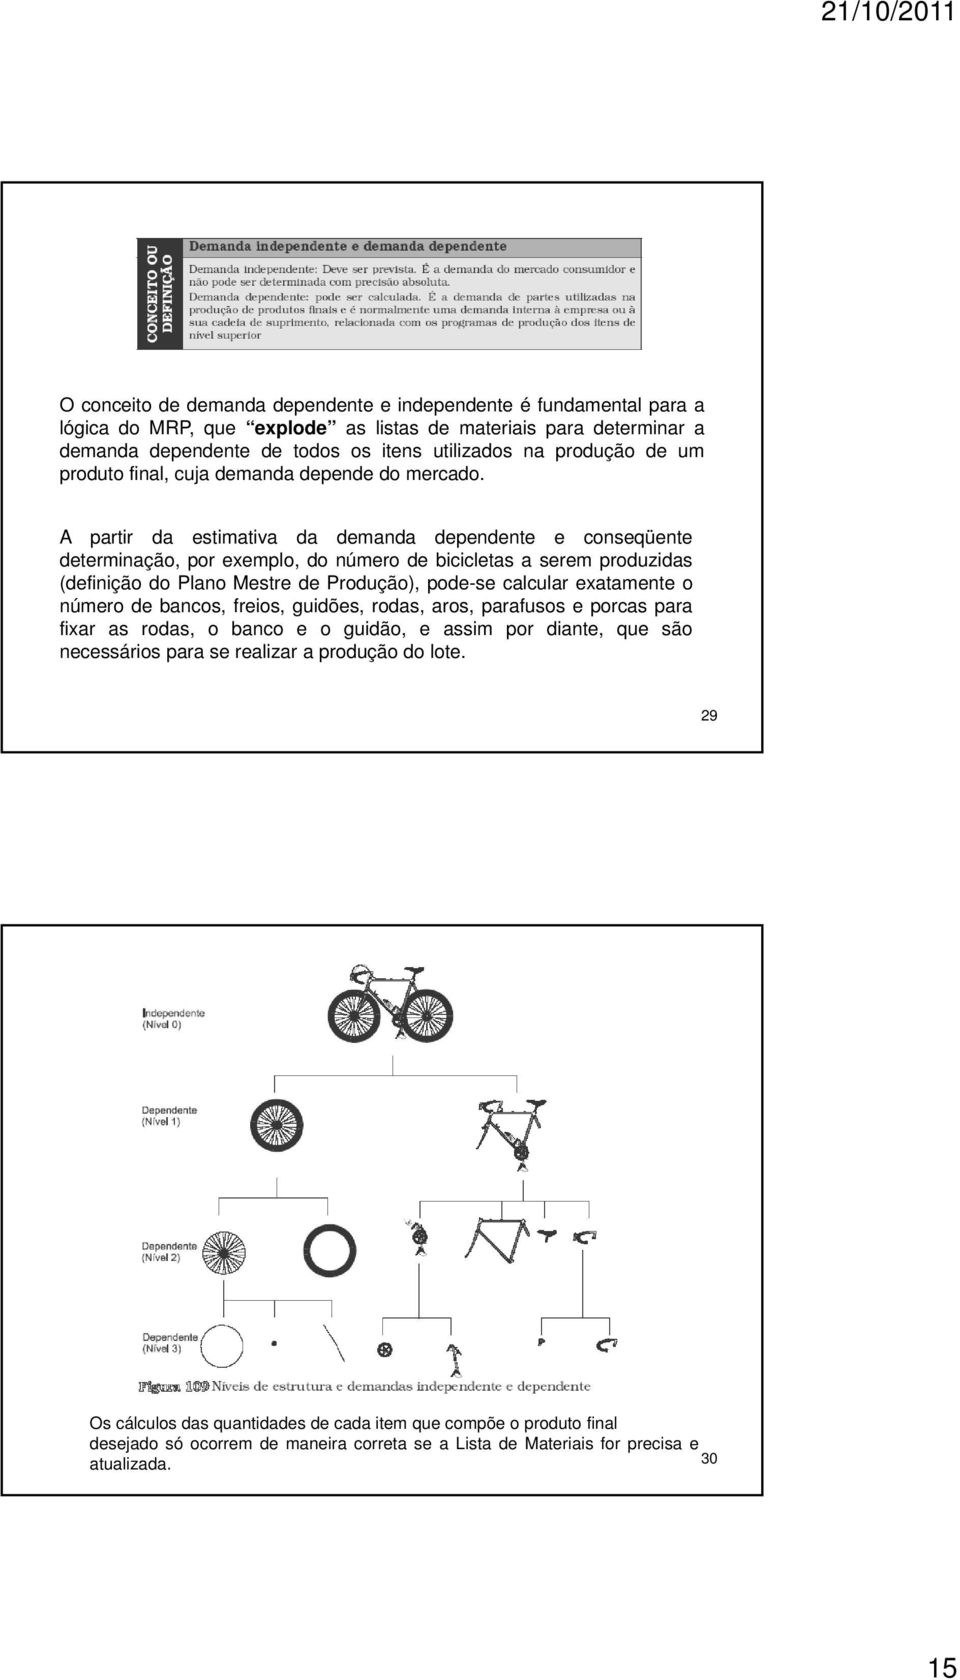 A partir da estimativa da demanda dependente e conseqüente determinação, por exemplo, do número de bicicletas a serem produzidas (definição do Plano Mestre de Produção), pode-se calcular exatamente o